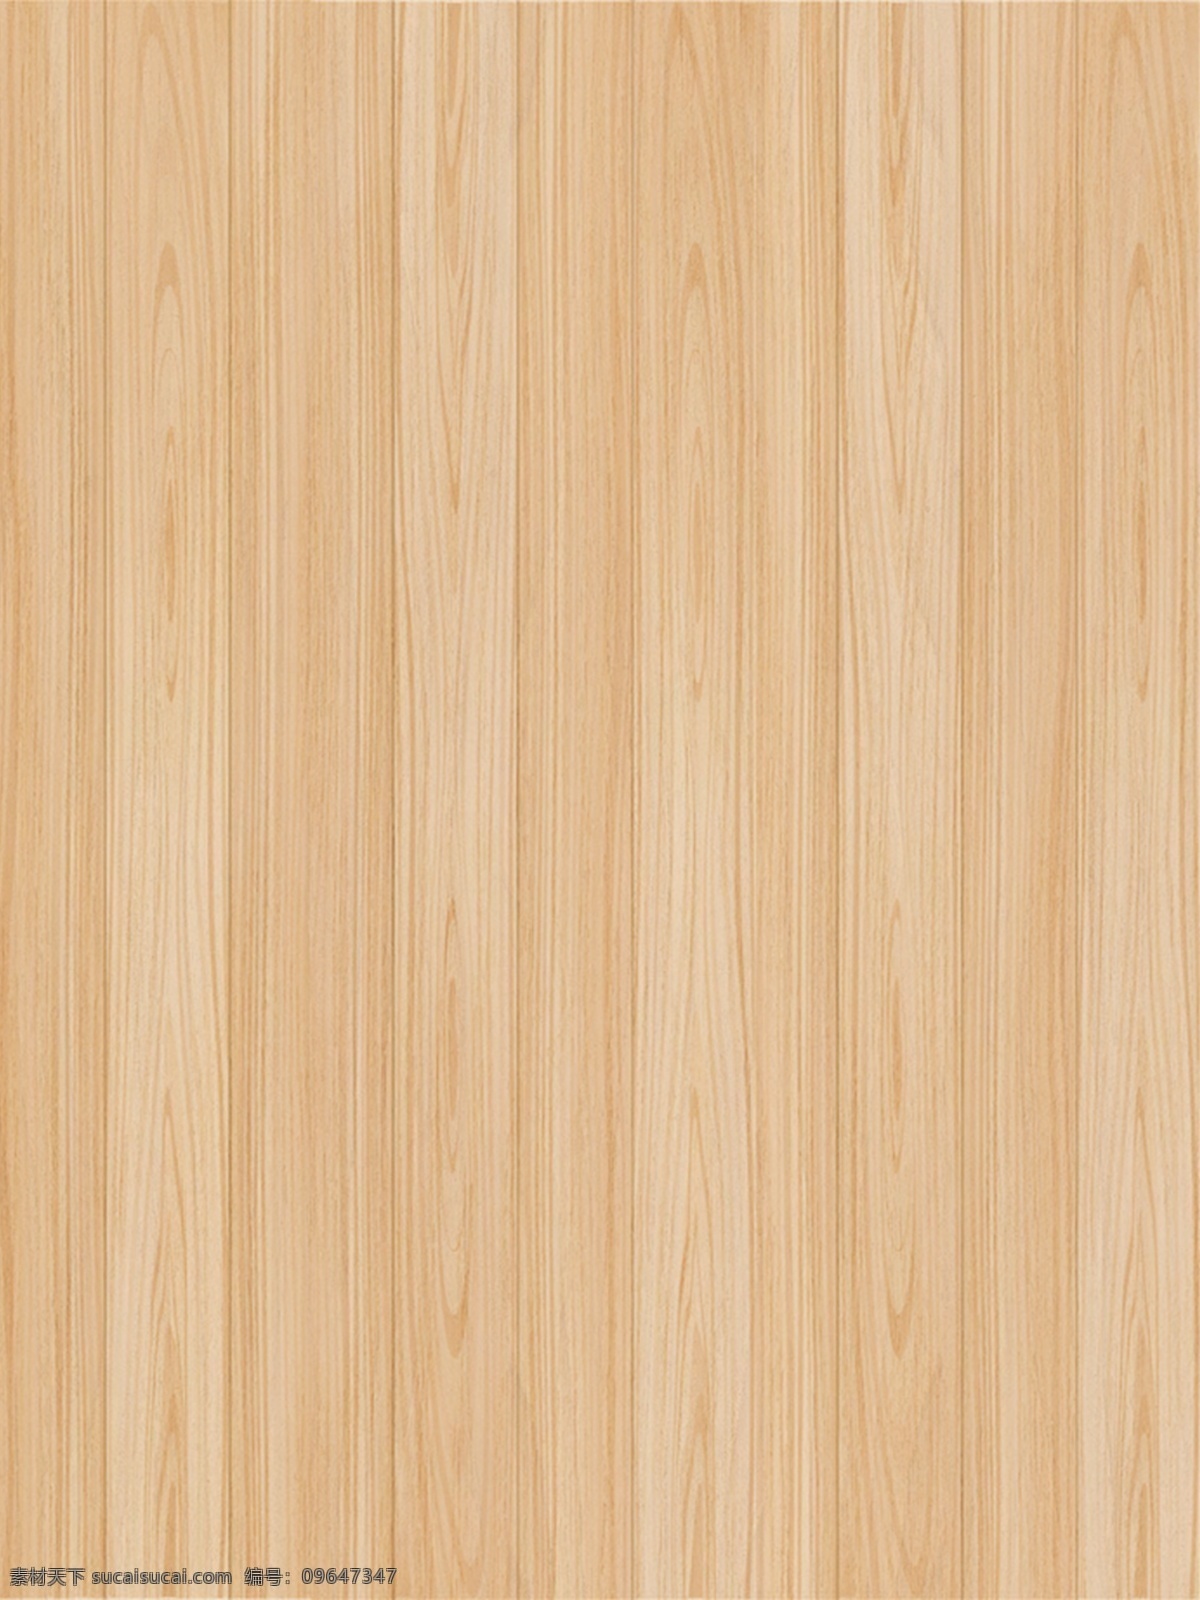 木纹背景 背景 背景素材 木纹 浅色木纹